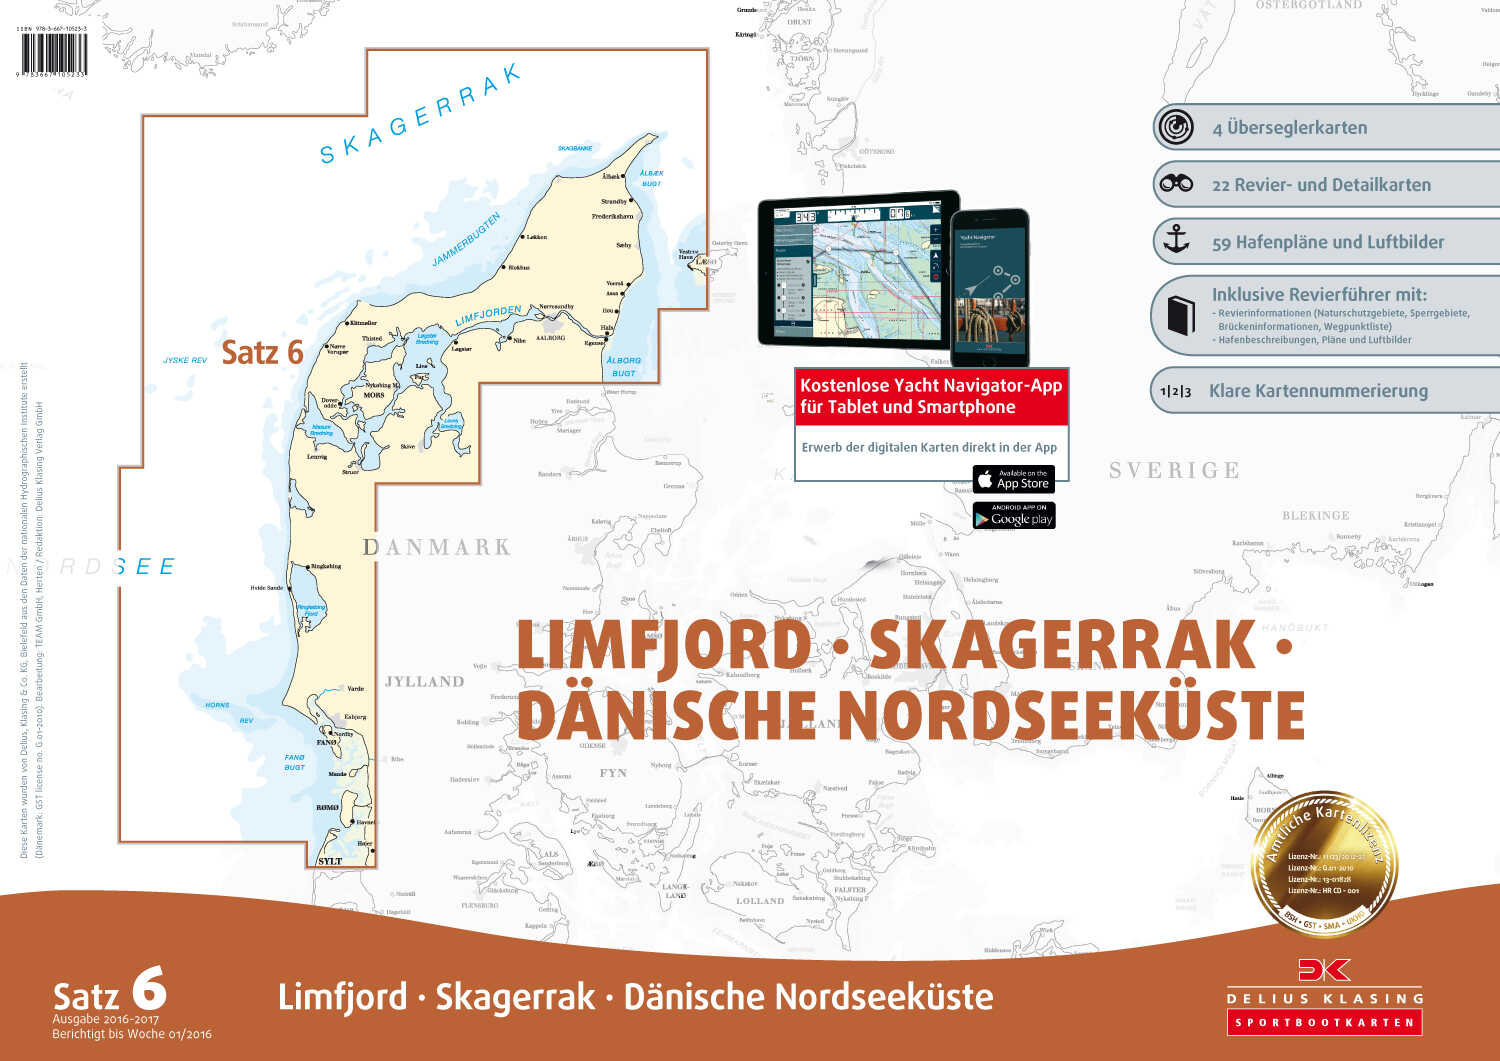 Delius Klasing Sportbootkarten Satz 6: Limfjord - Skagerrak - Dänische Nordseeküste